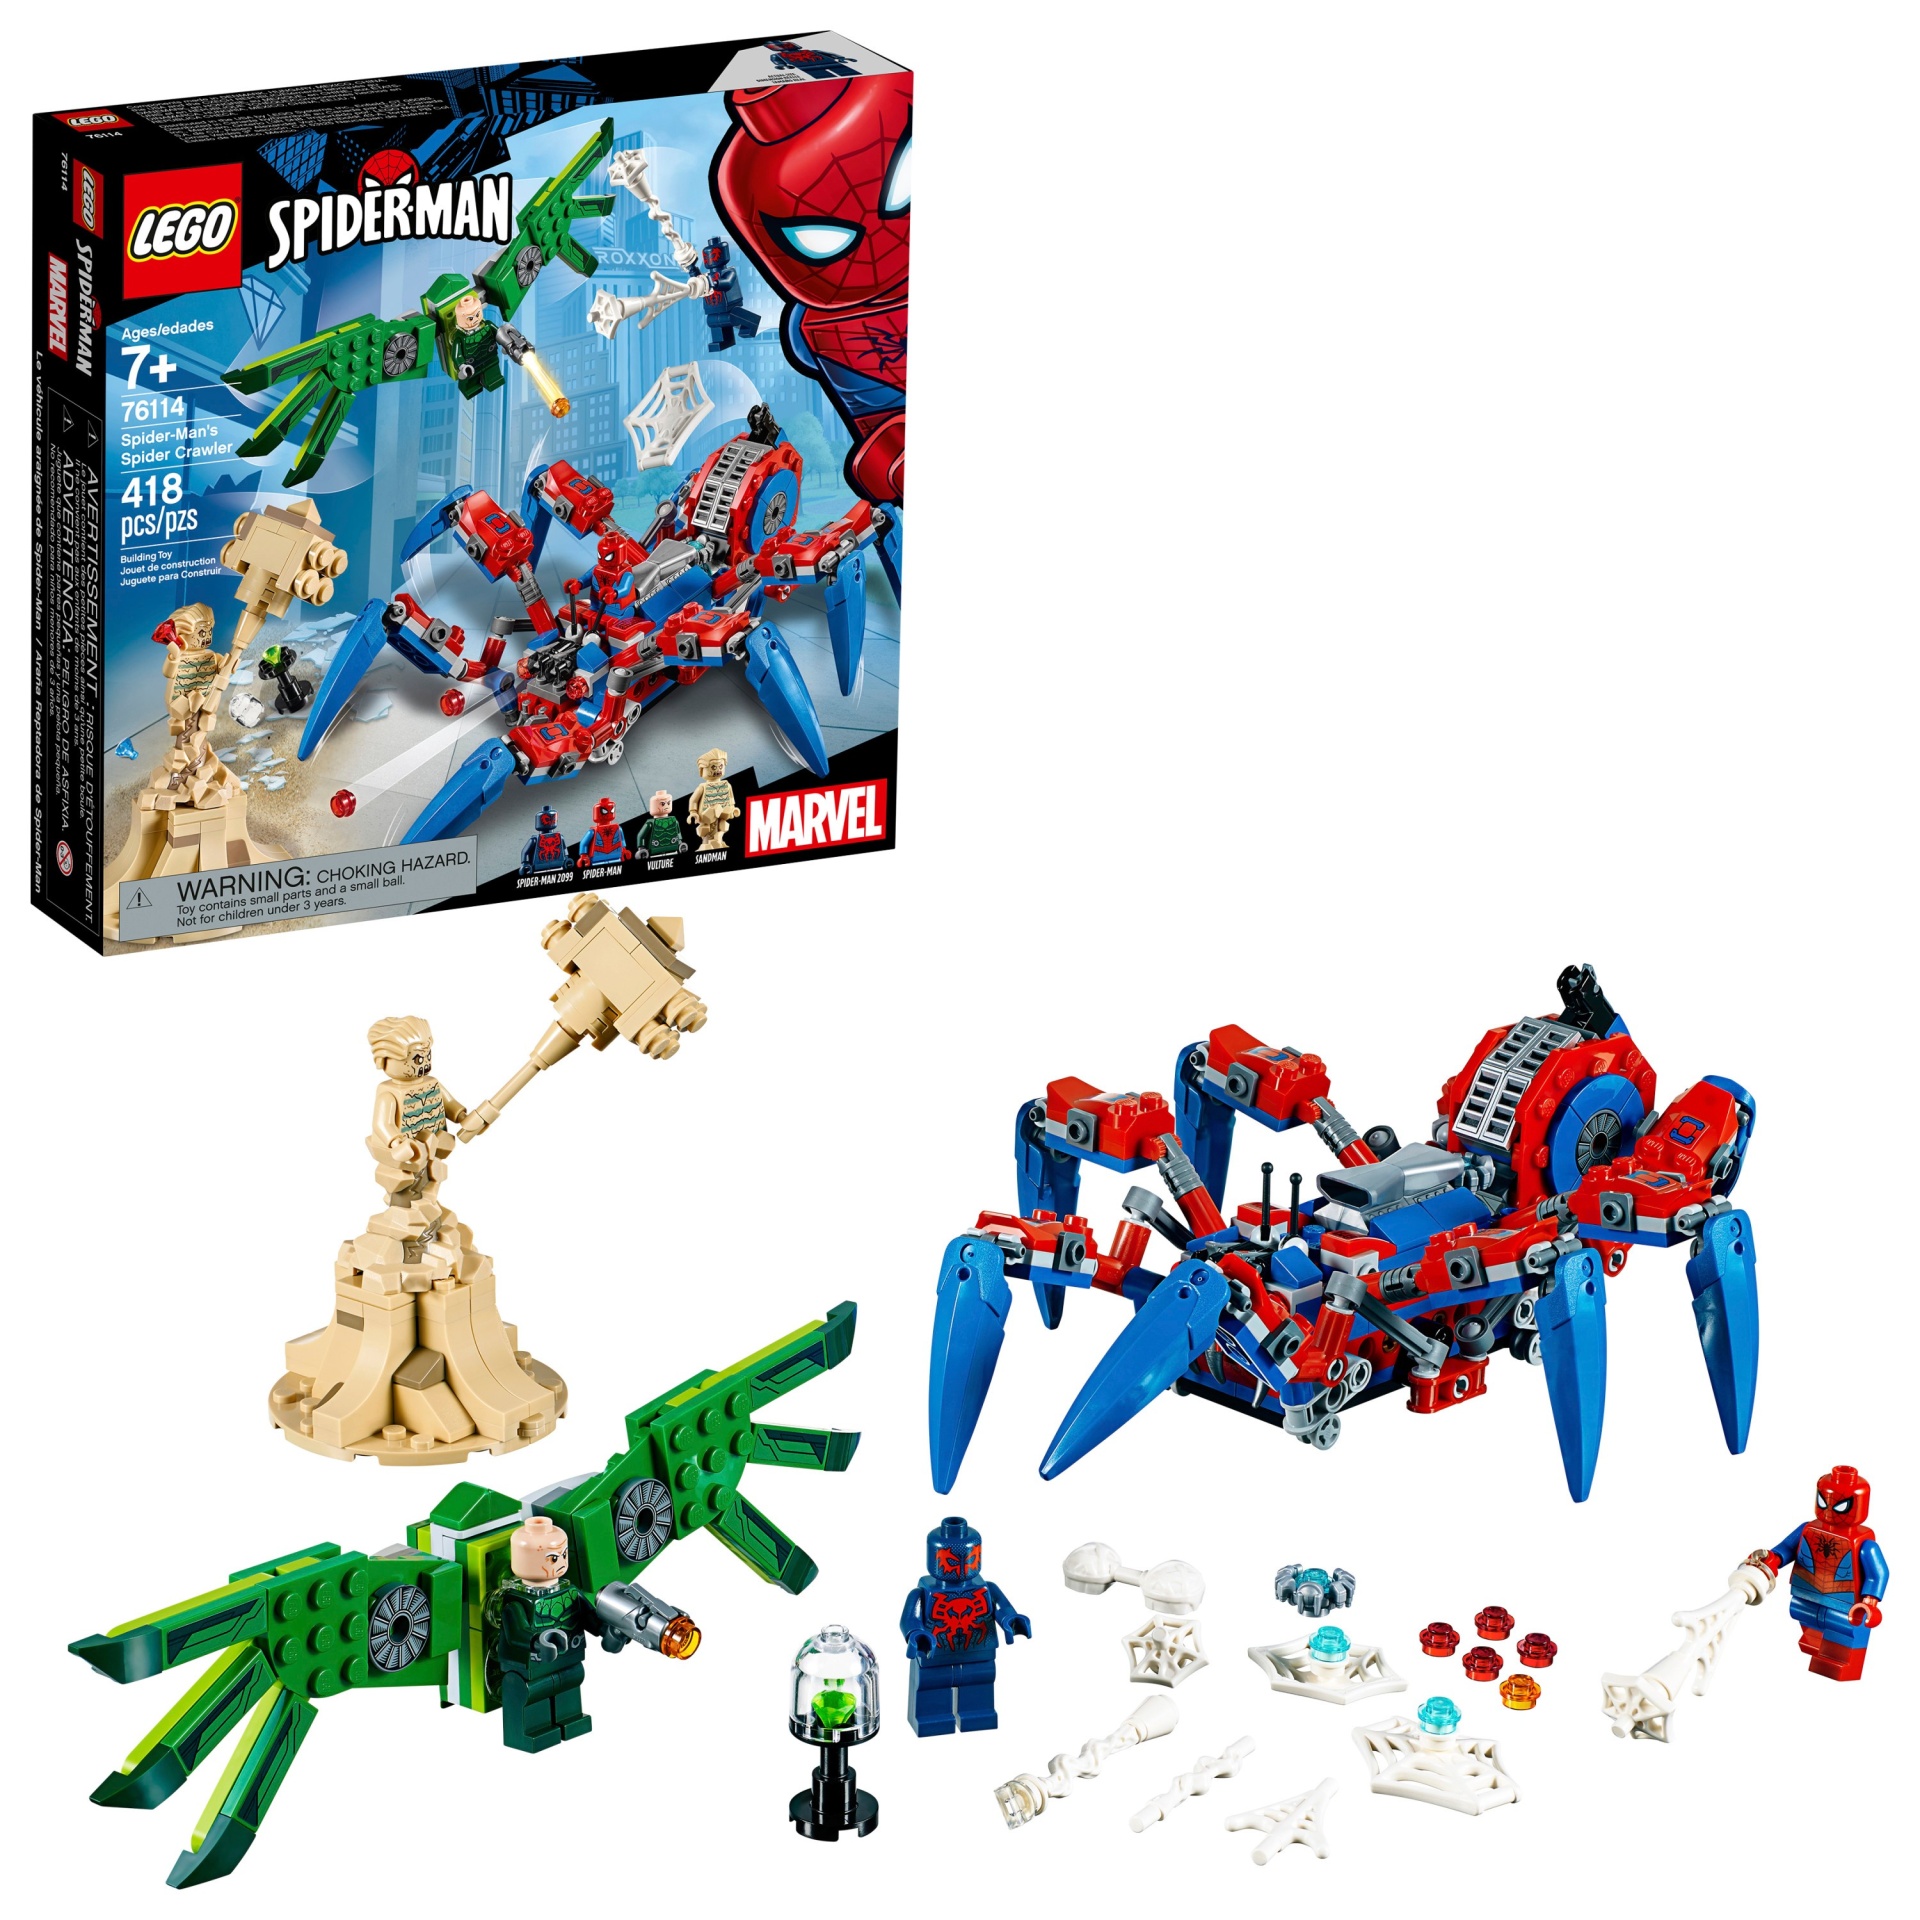 slide 1 of 6, LEGO Marvel Super Heroes Spider-man 76114, 1 ct